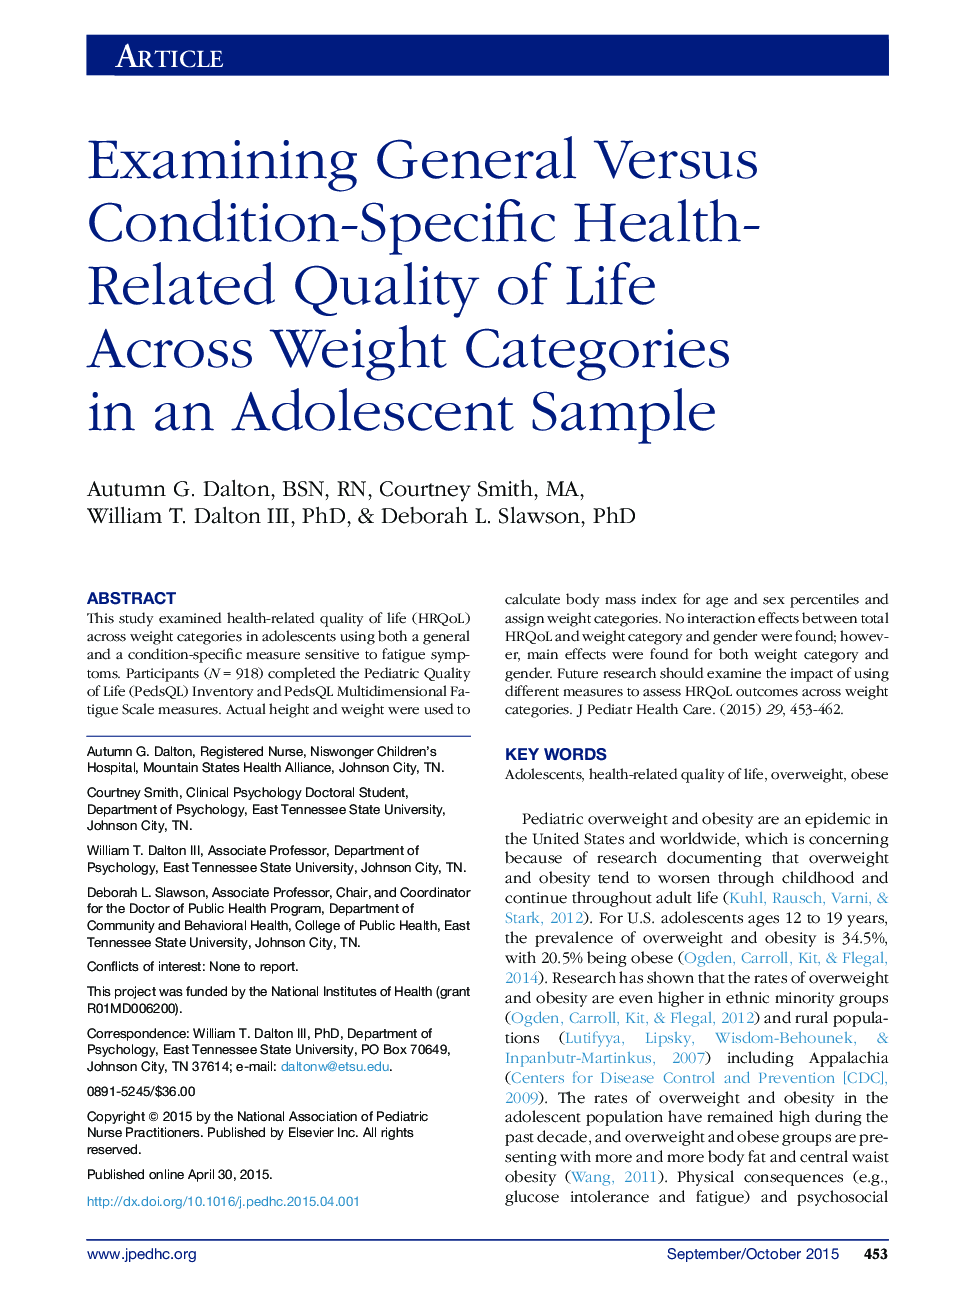 بررسی کلی در مقابل وضعیت خاص کیفیت زندگی مربوط به سلامت در سراسر دسته های وزن در نمونه نوجوانان 